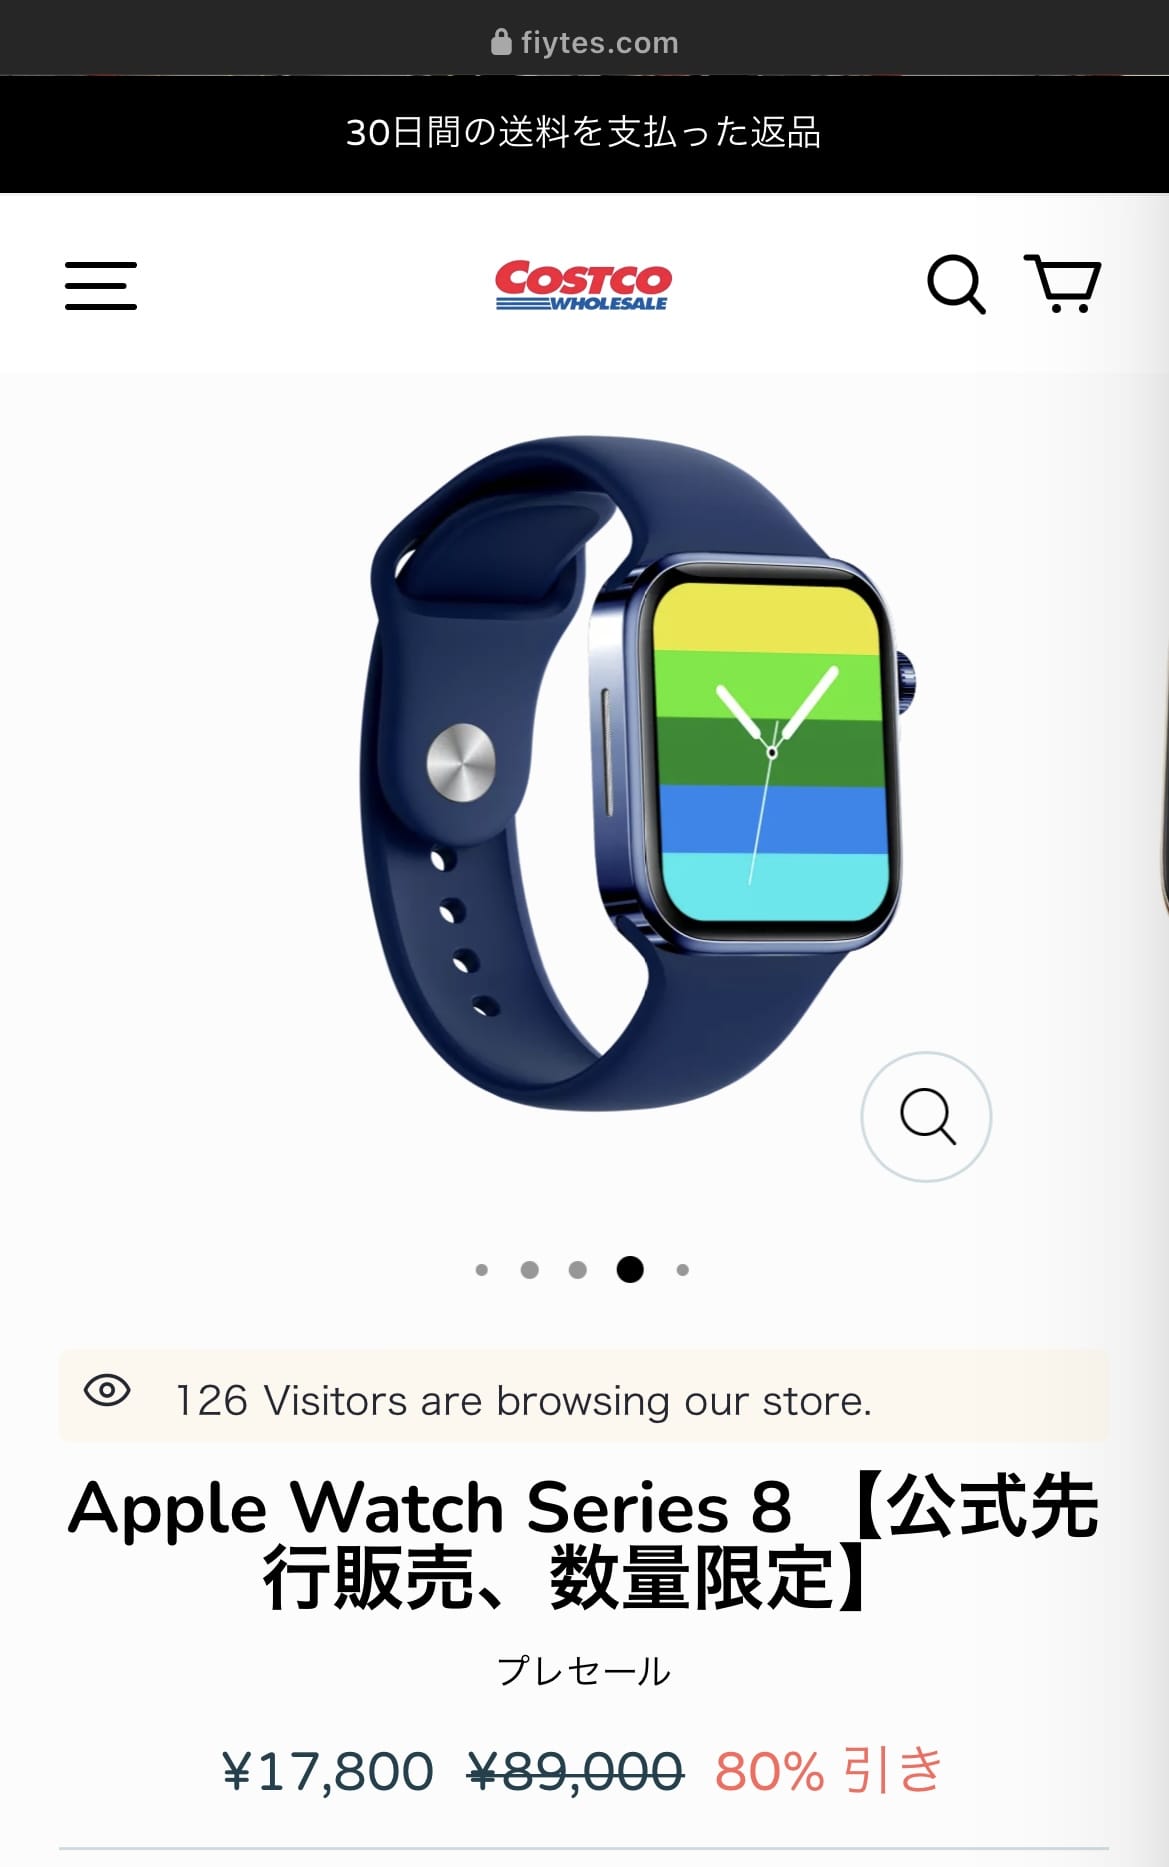 発表前のApple Watch Series 8が在庫処分セールになっていたので 